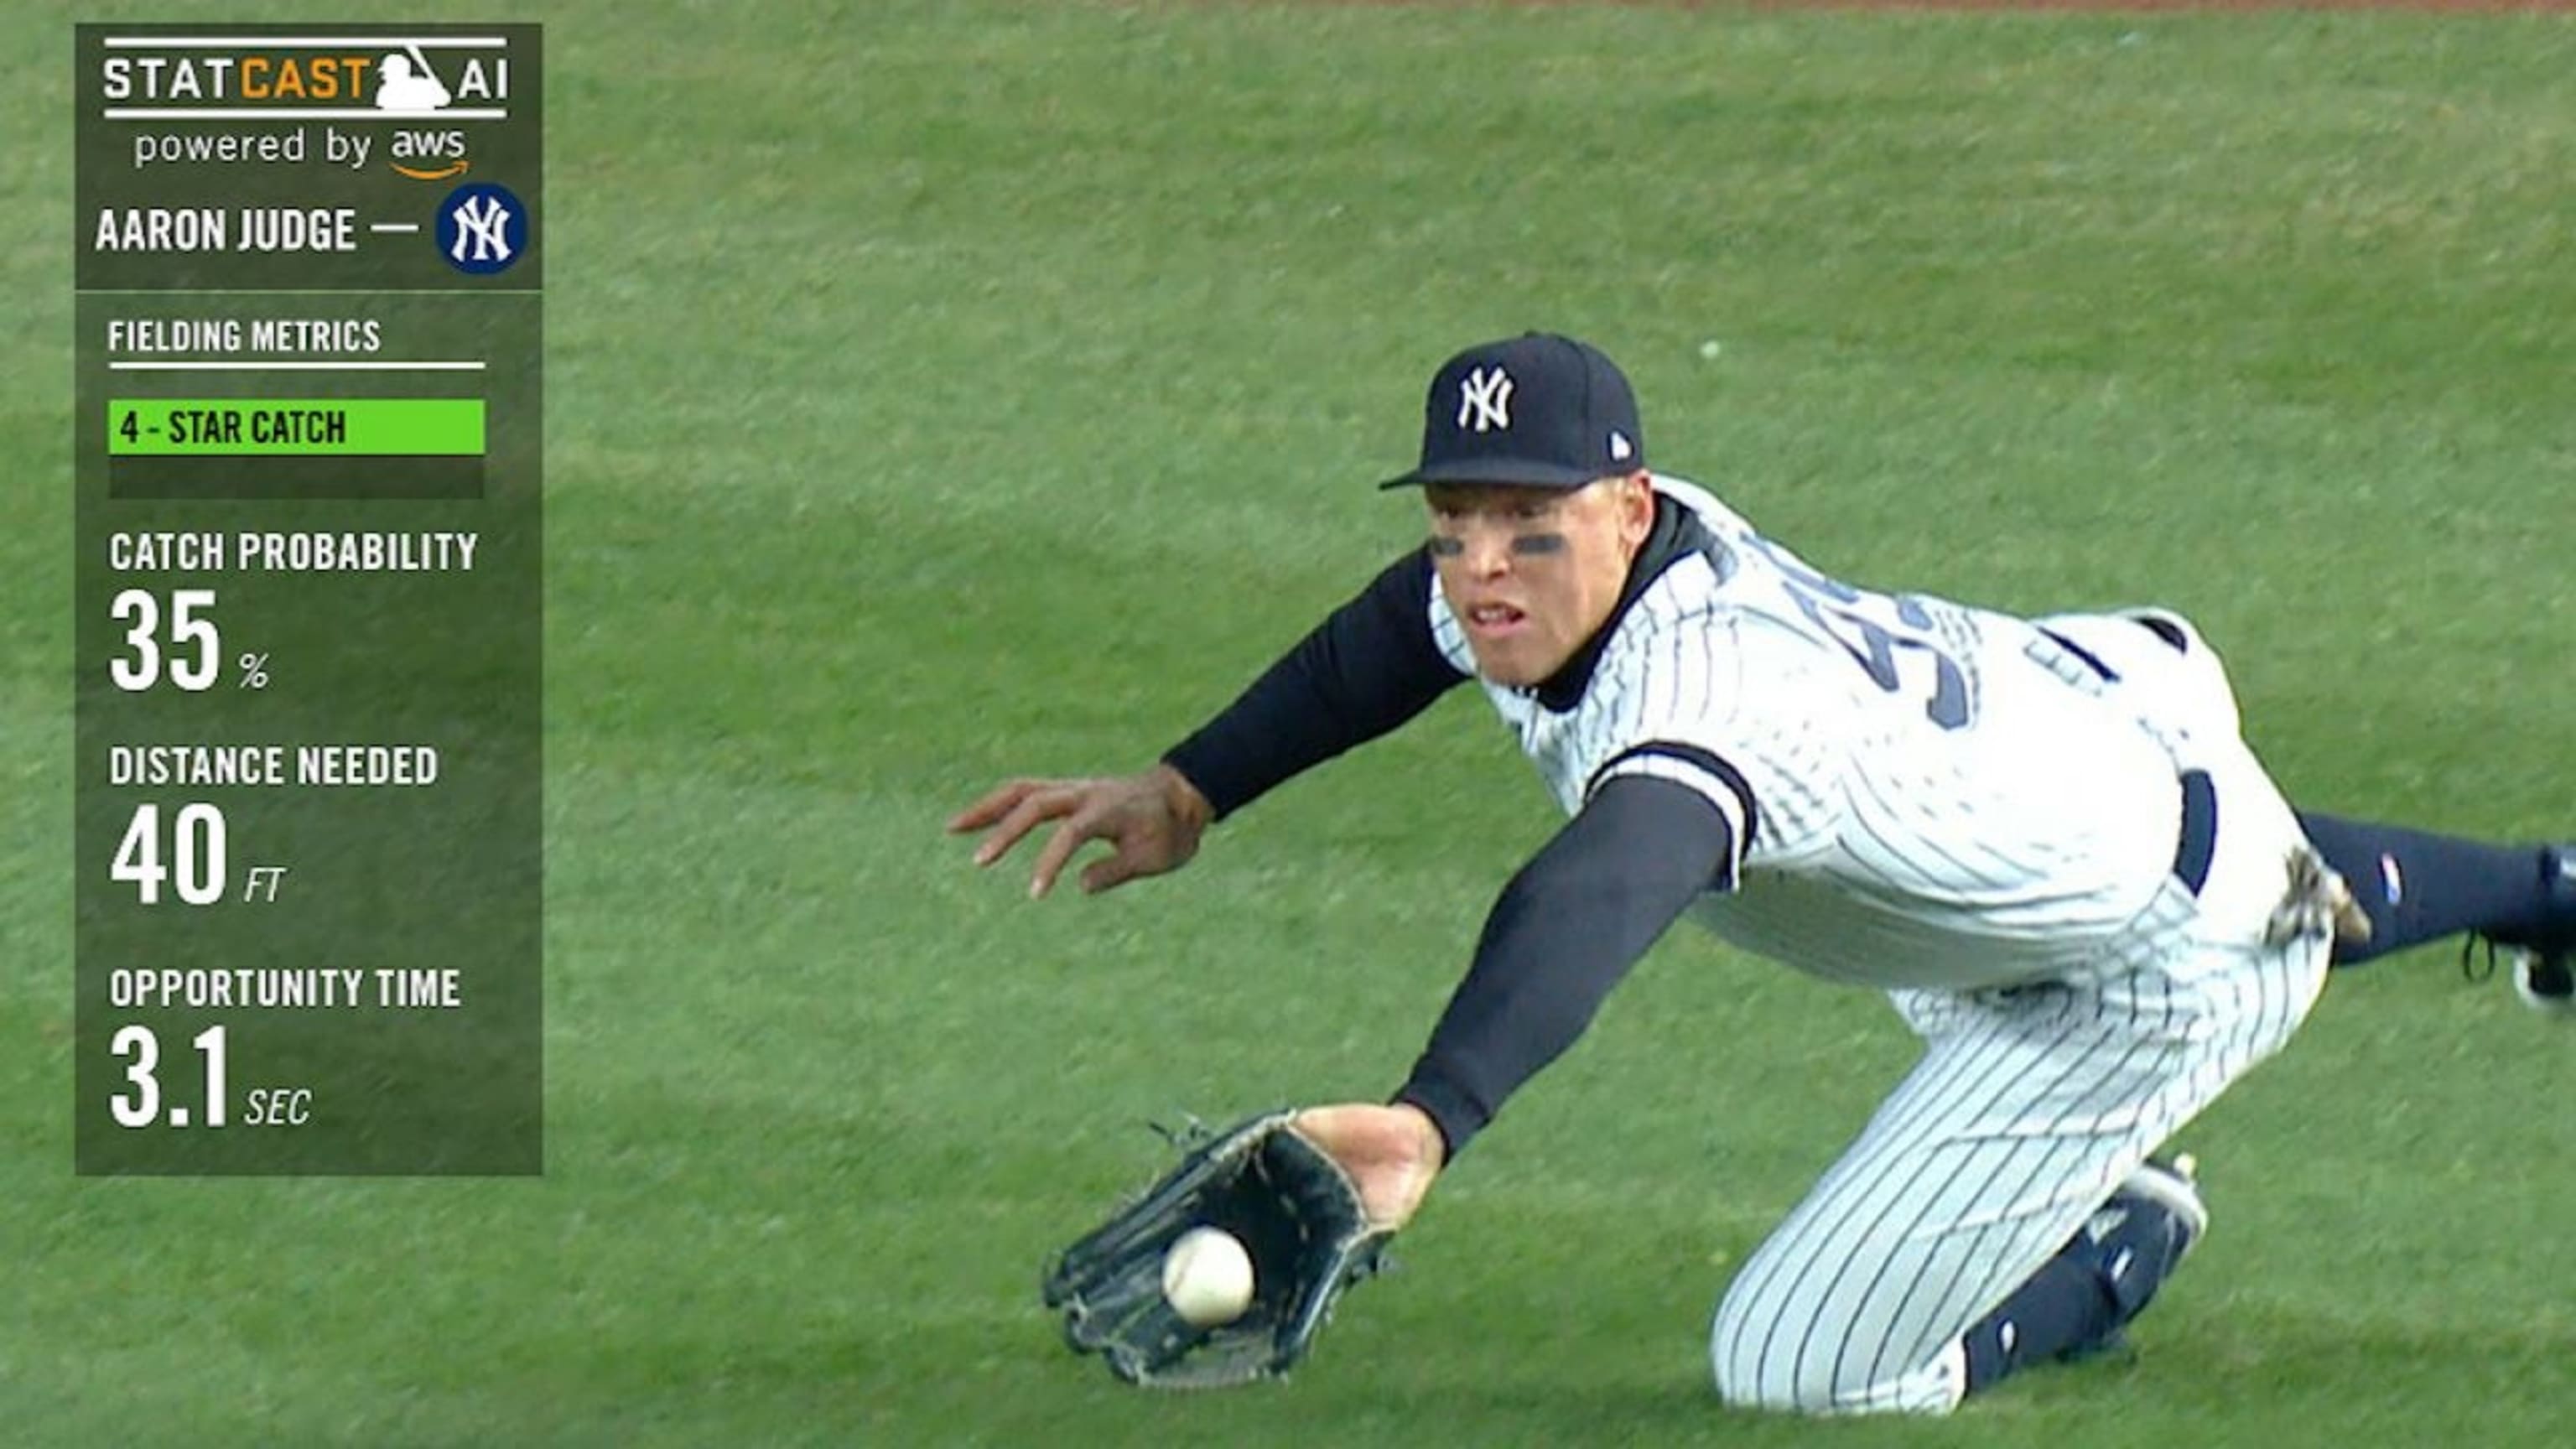 Aaron Judge catch helps lift Yankees